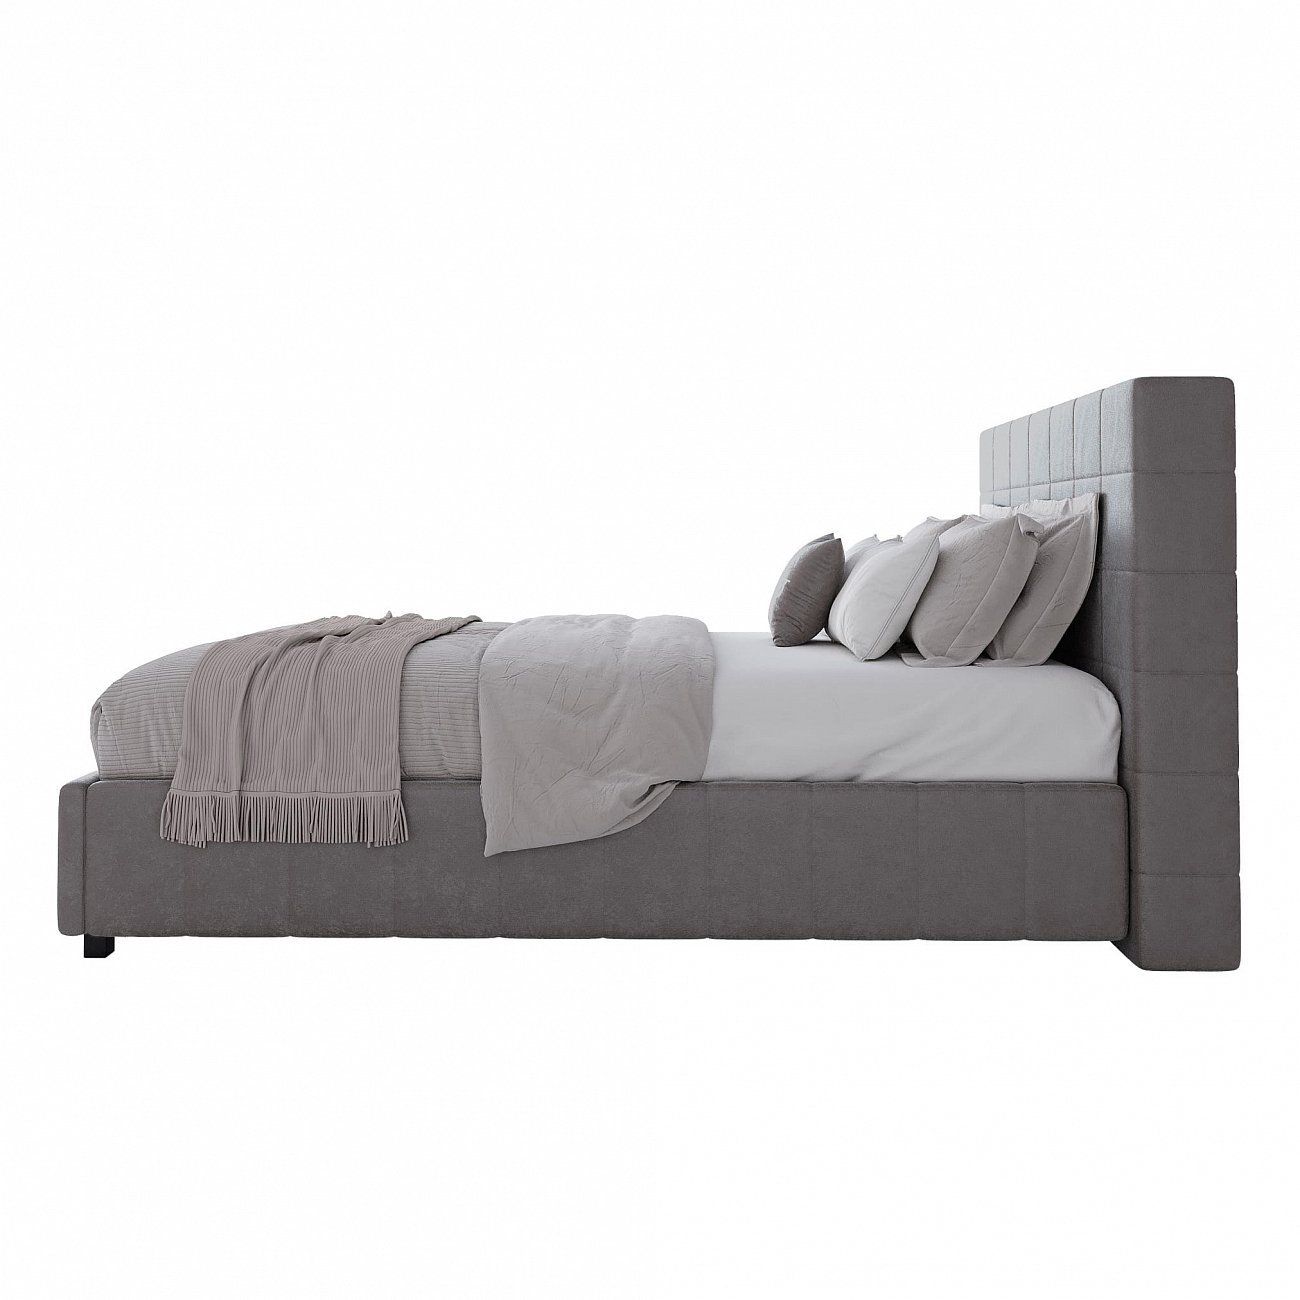 Кровать подростковая с мягкой спинкой 140х200 см серо-бежевая Shining Modern